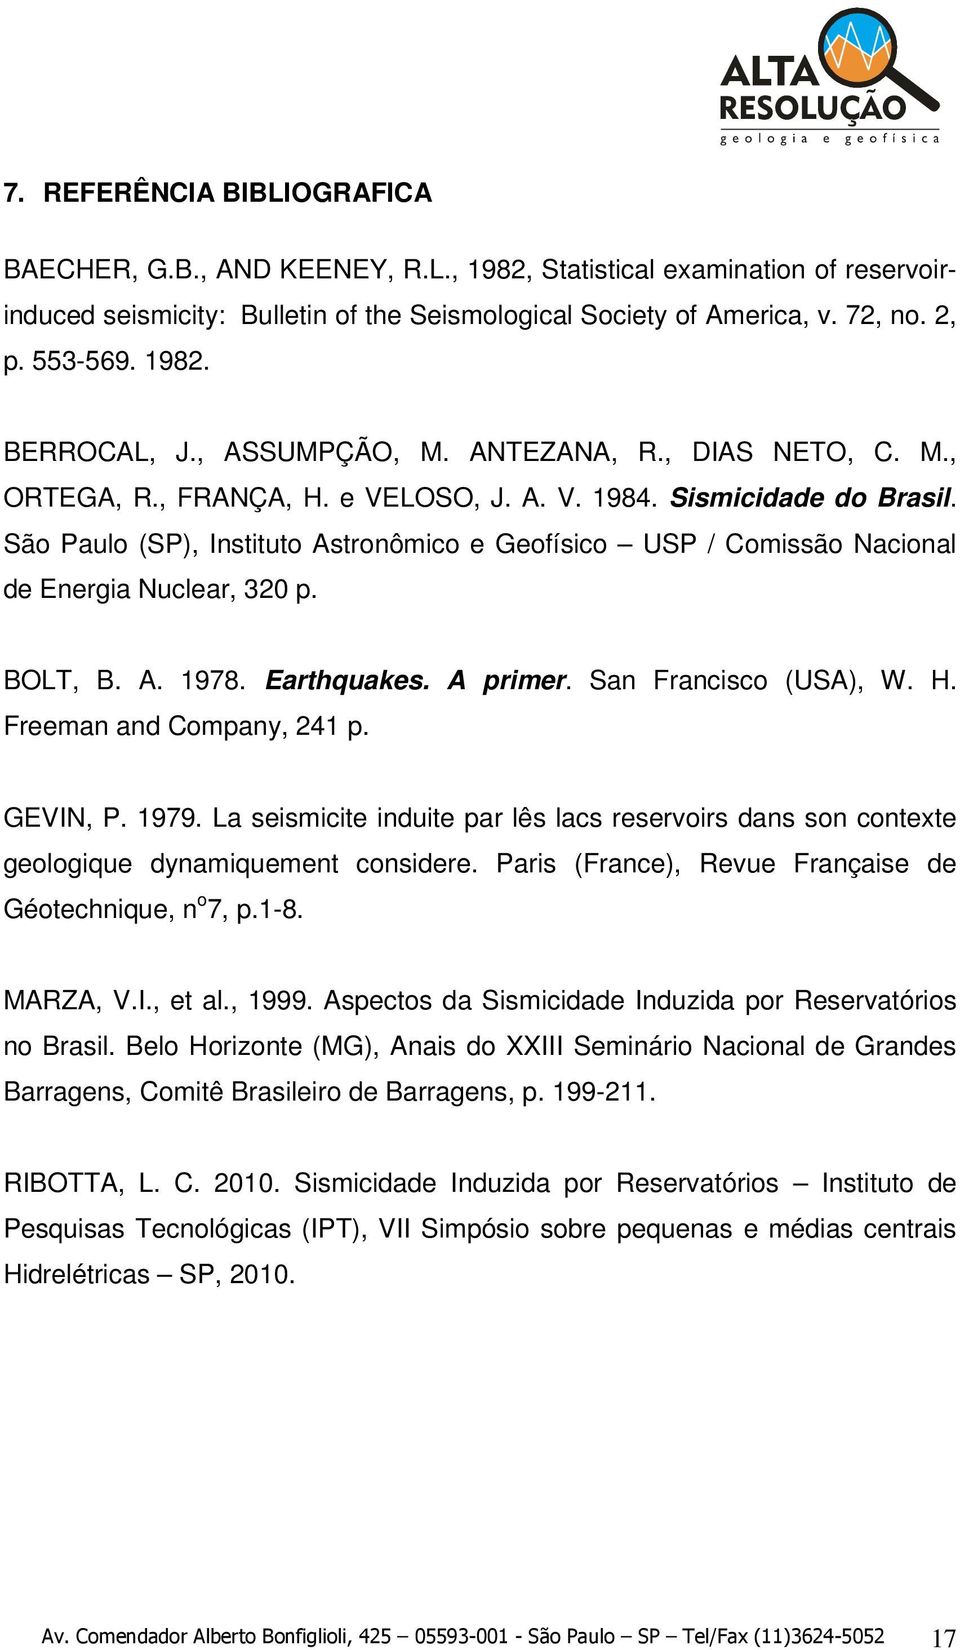 São Paulo (SP), Instituto Astronômico e Geofísico USP / Comissão Nacional de Energia Nuclear, 320 p. BOLT, B. A. 1978. Earthquakes. A primer. San Francisco (USA), W. H. Freeman and Company, 241 p.